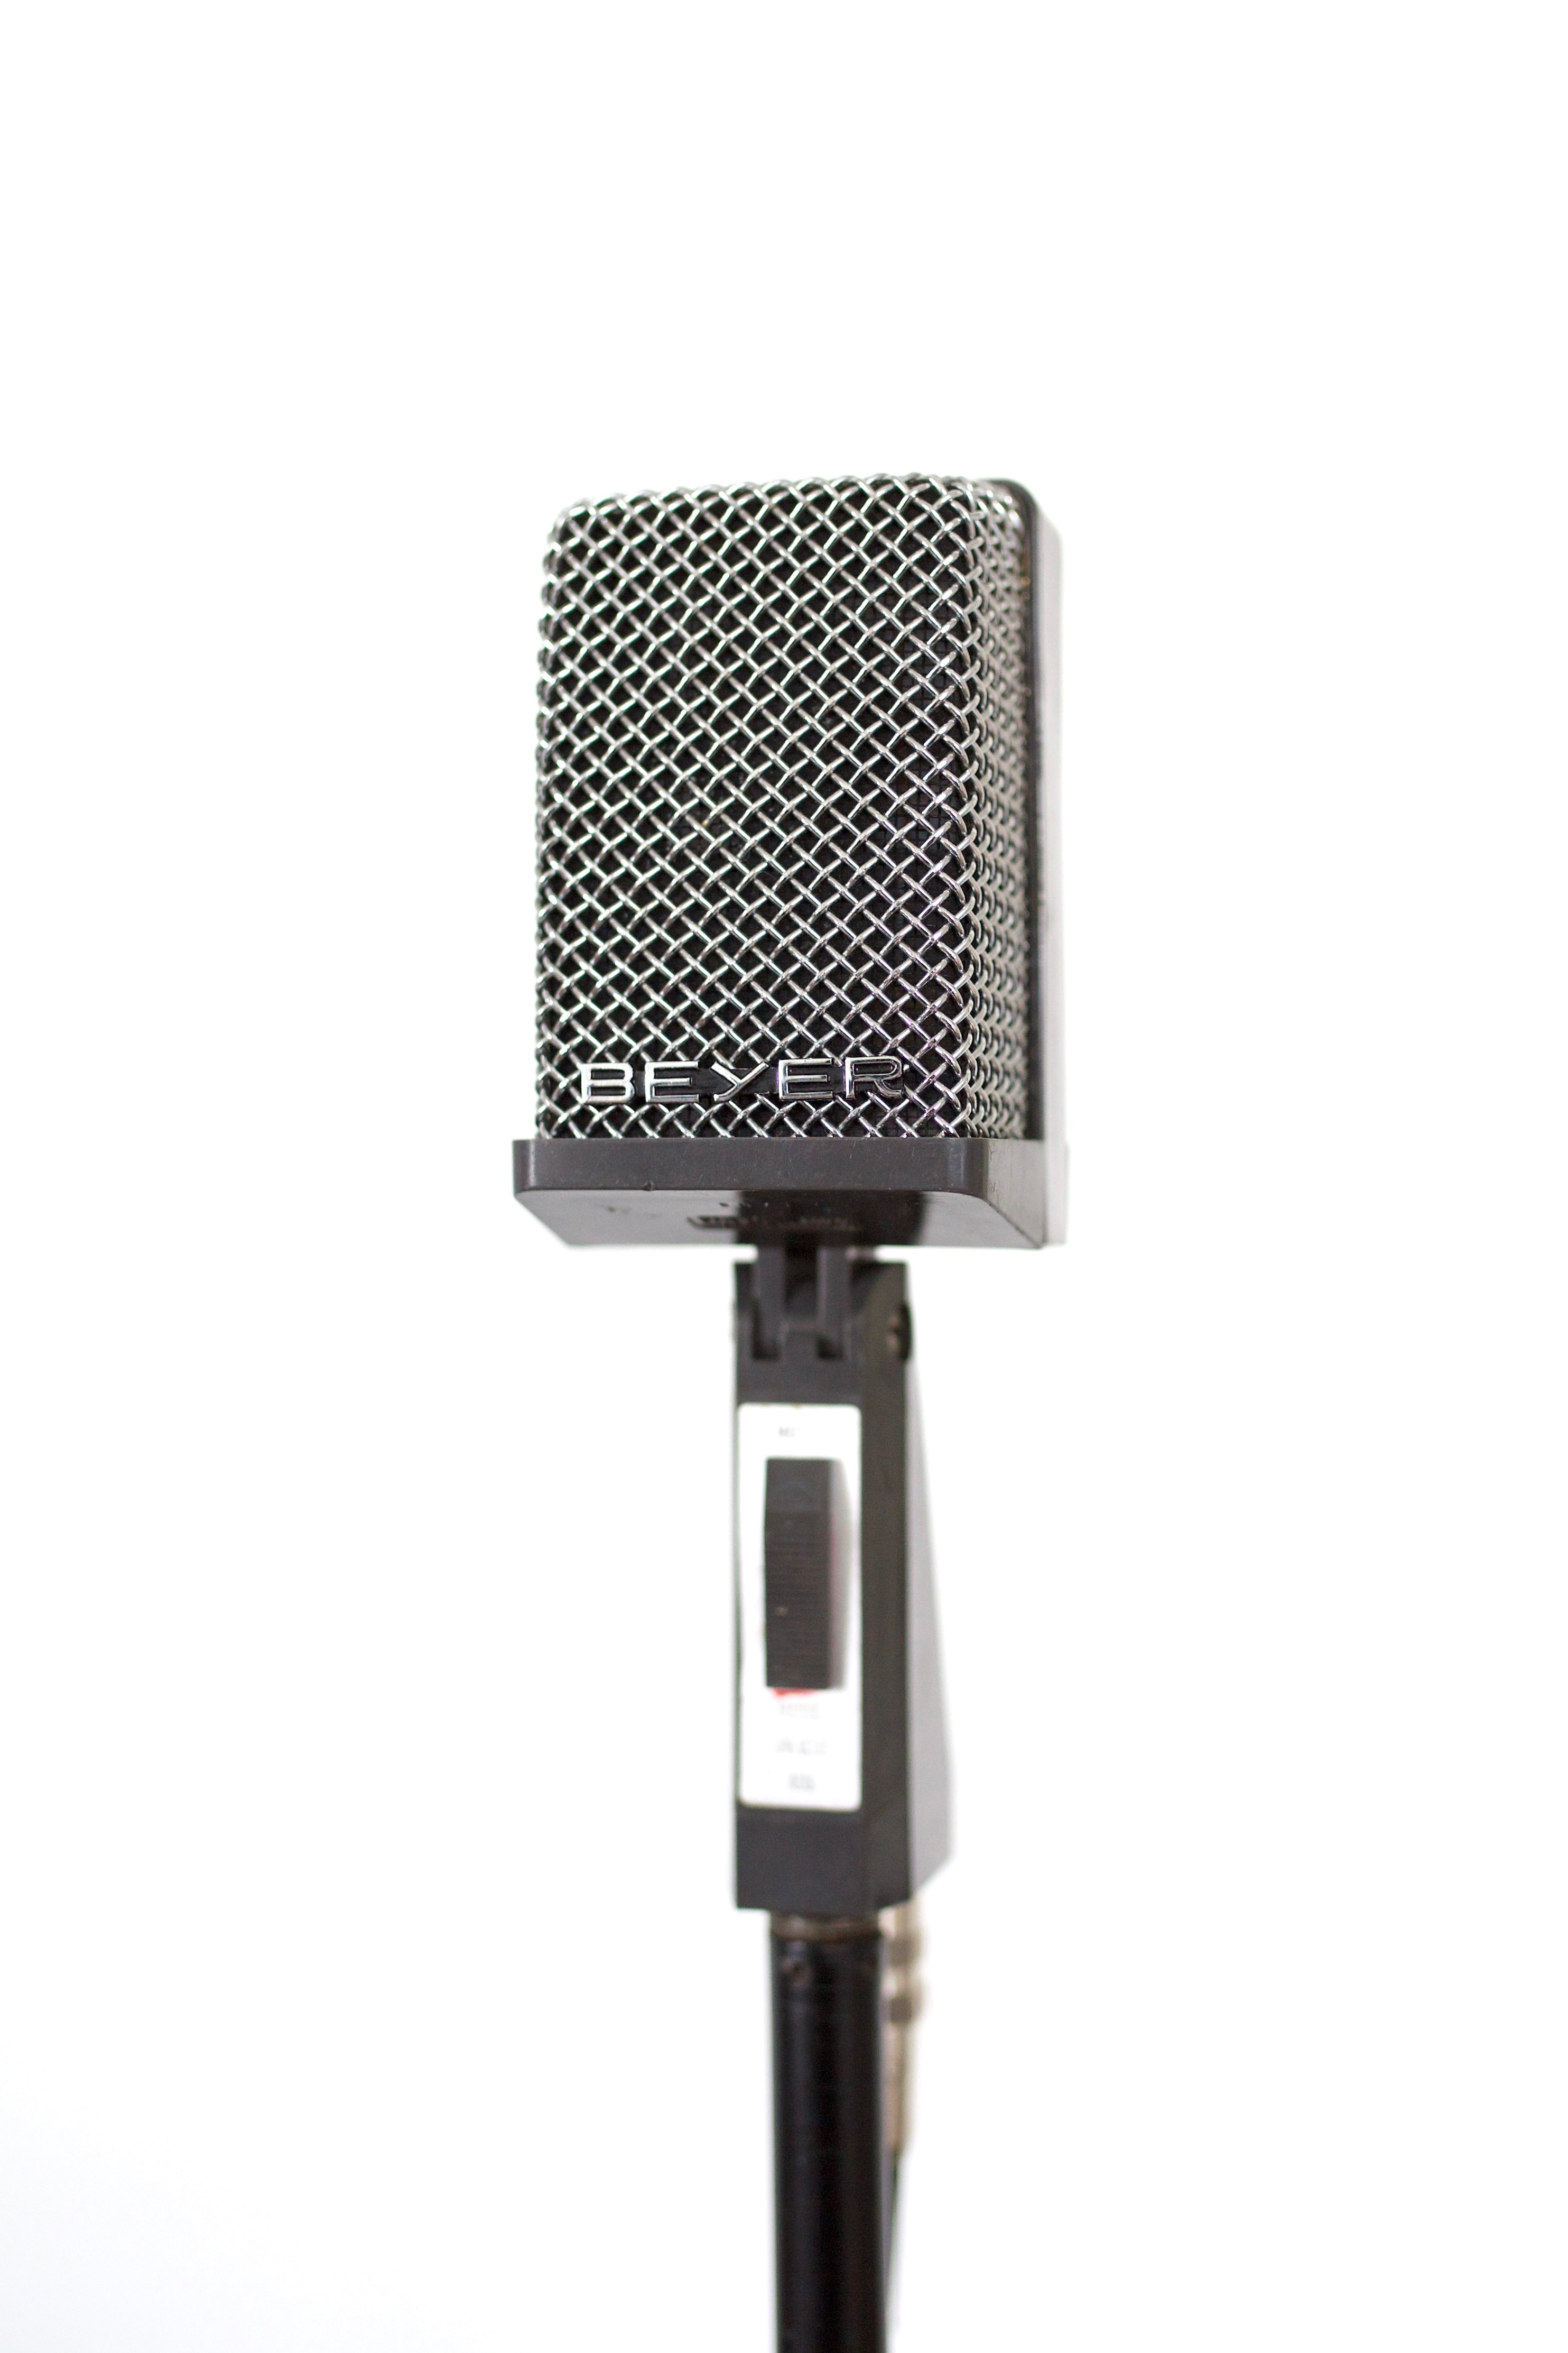 Beyerdynamic M320 Ribbon Microphone